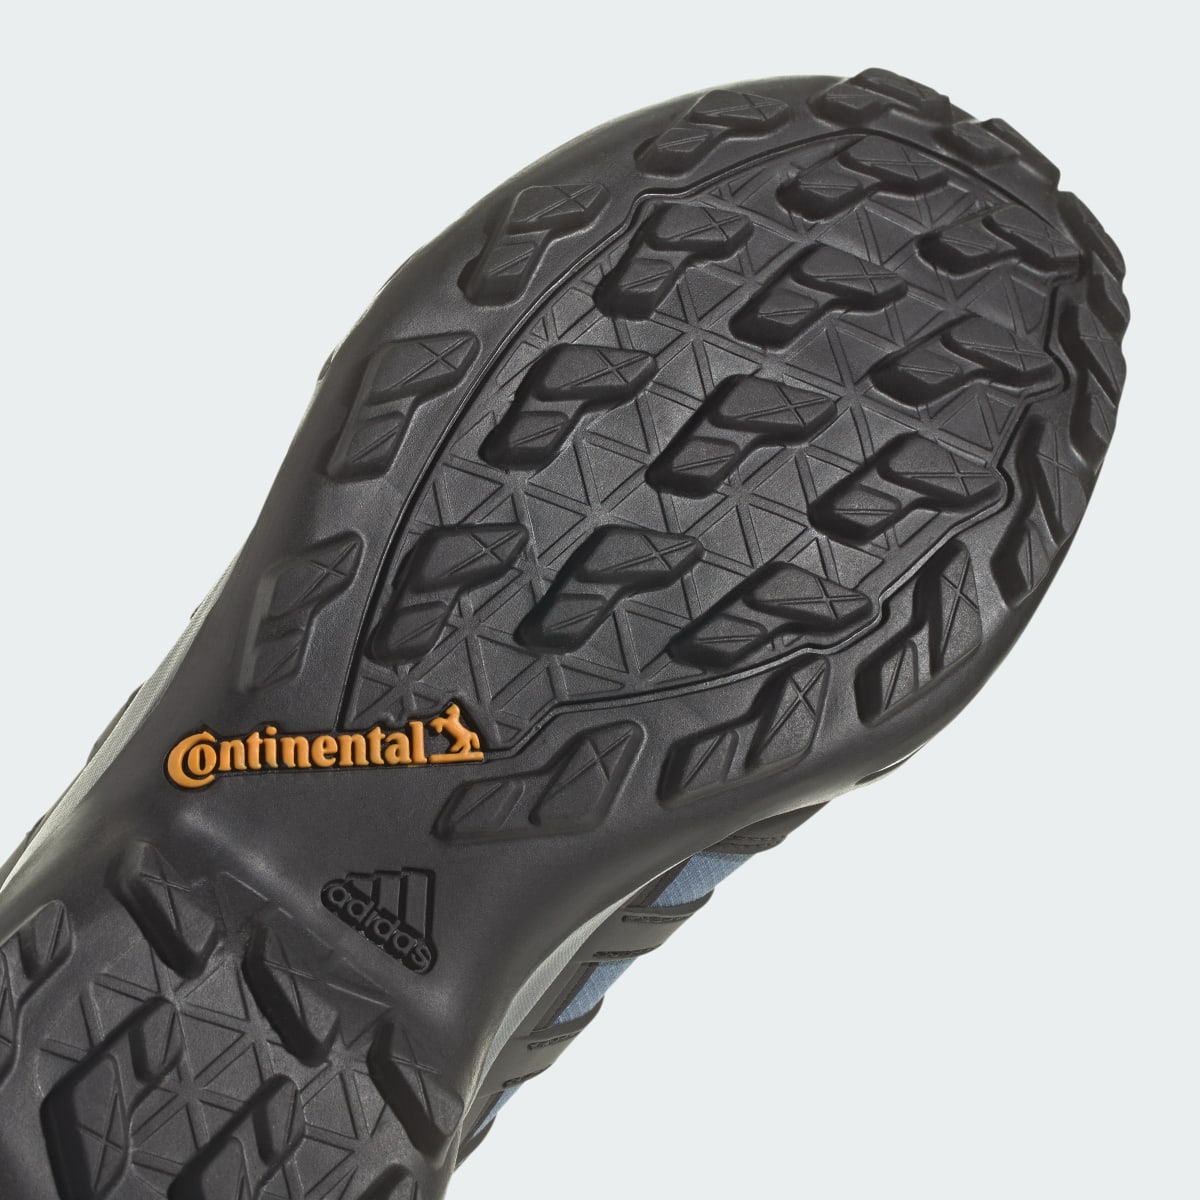 Adidas Terrex Swift R2 GORE-TEX Yürüyüş Ayakkabısı. 11